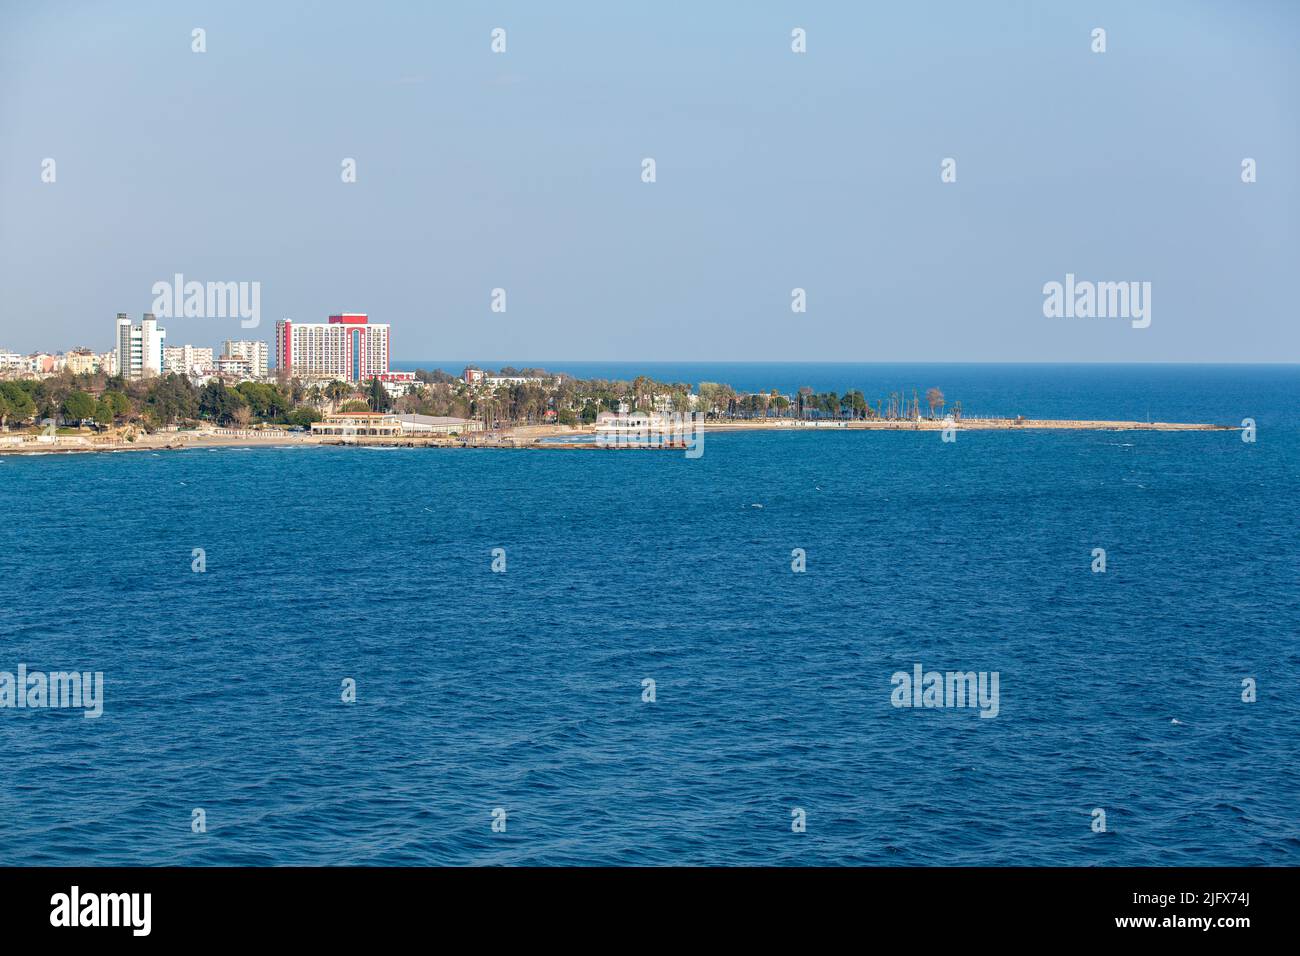 Antalya Turkey sea and coastal views. Stock Photo